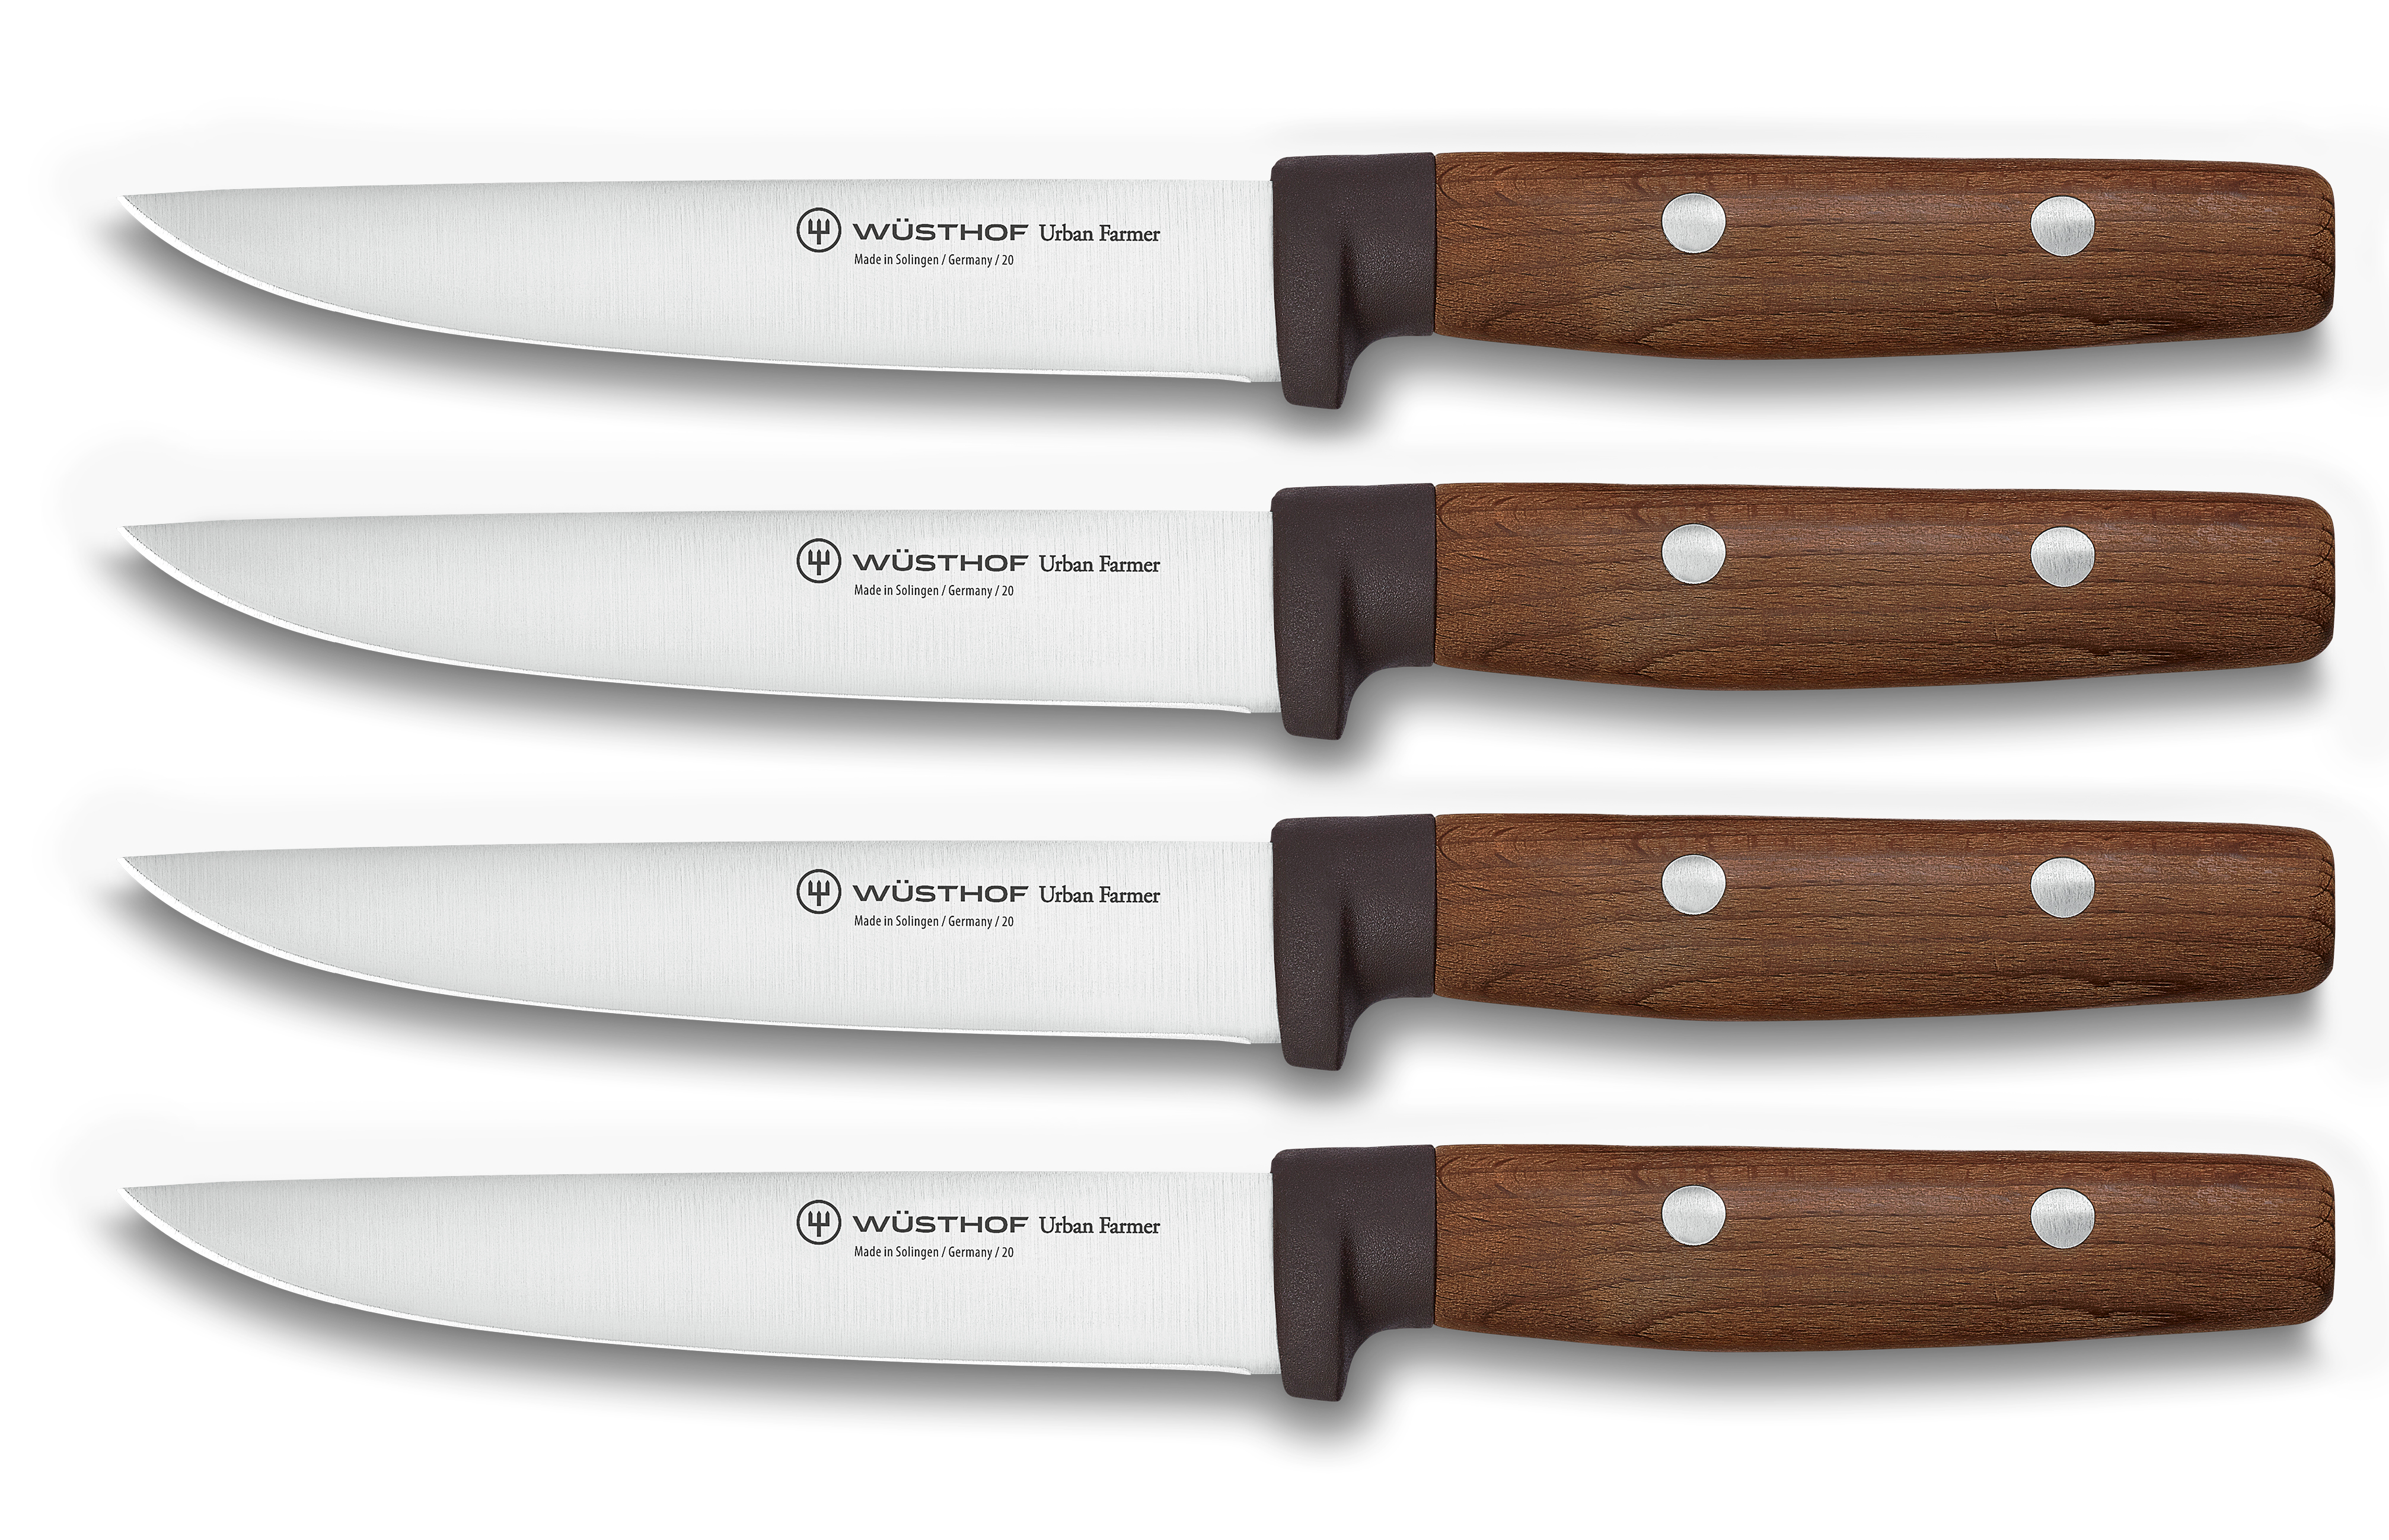 Steakmesser Set mit 4 Messern / Steak knife set with 4 knives